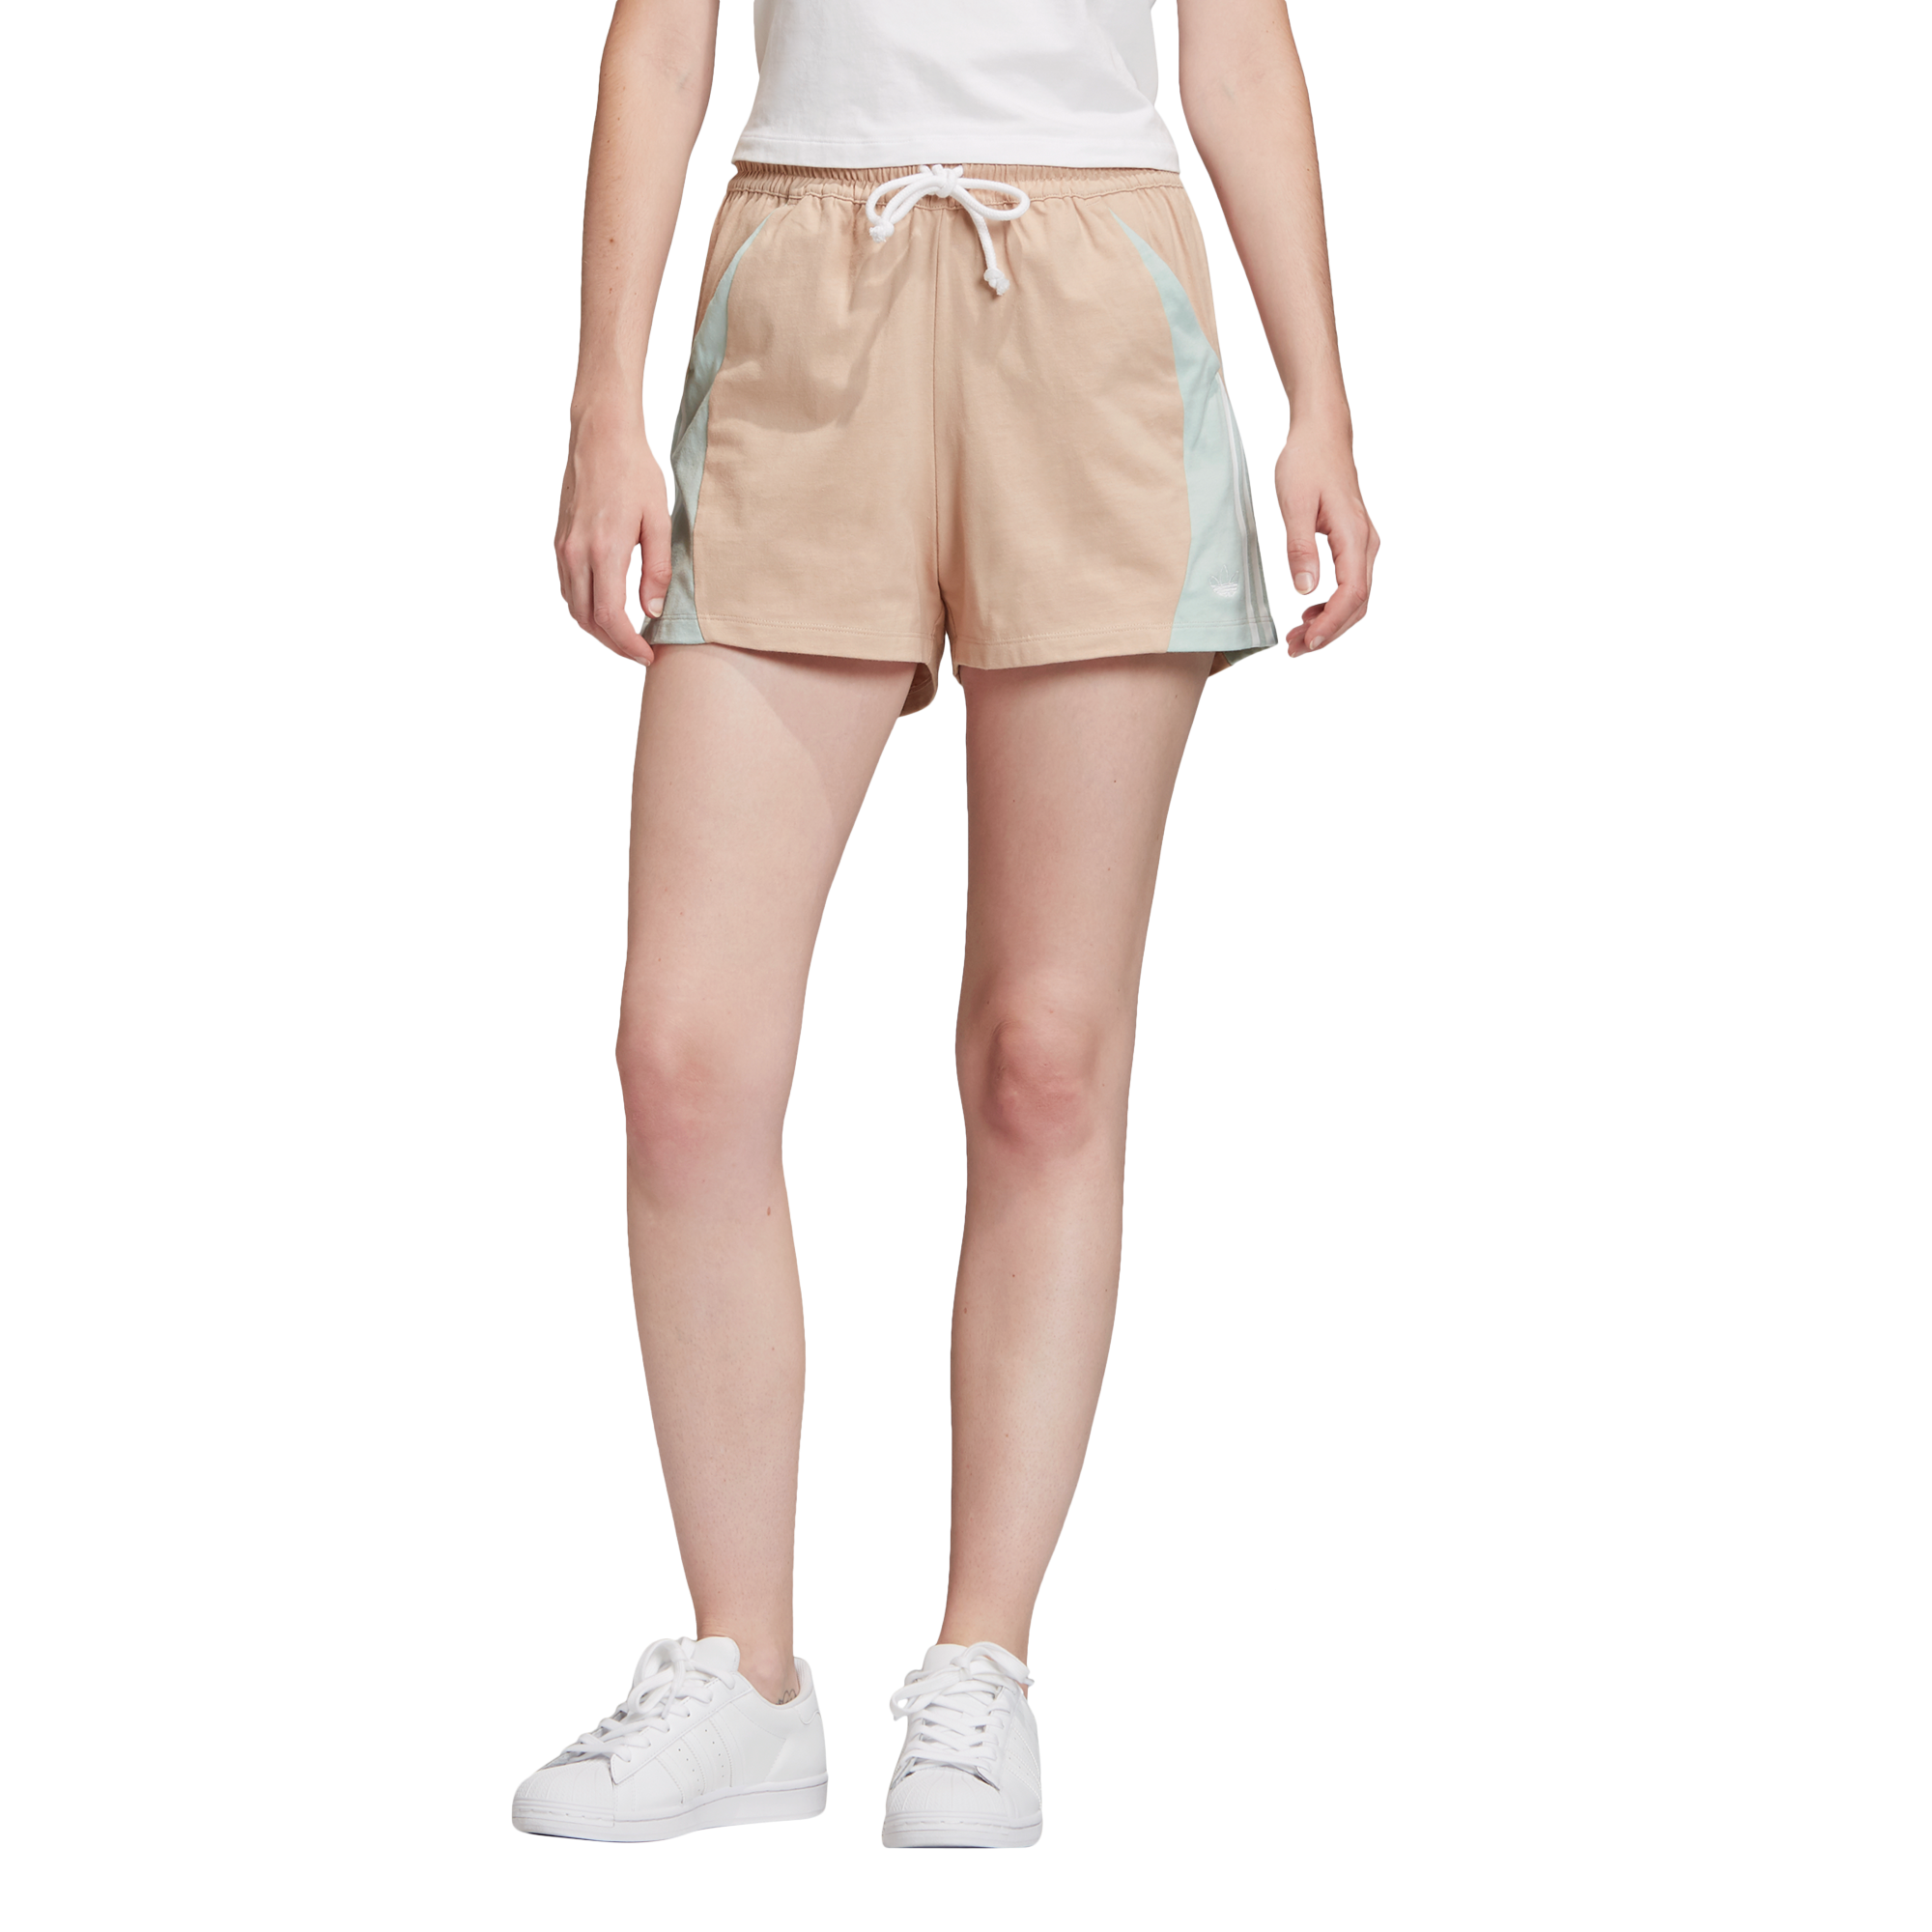 jd adidas shorts womens